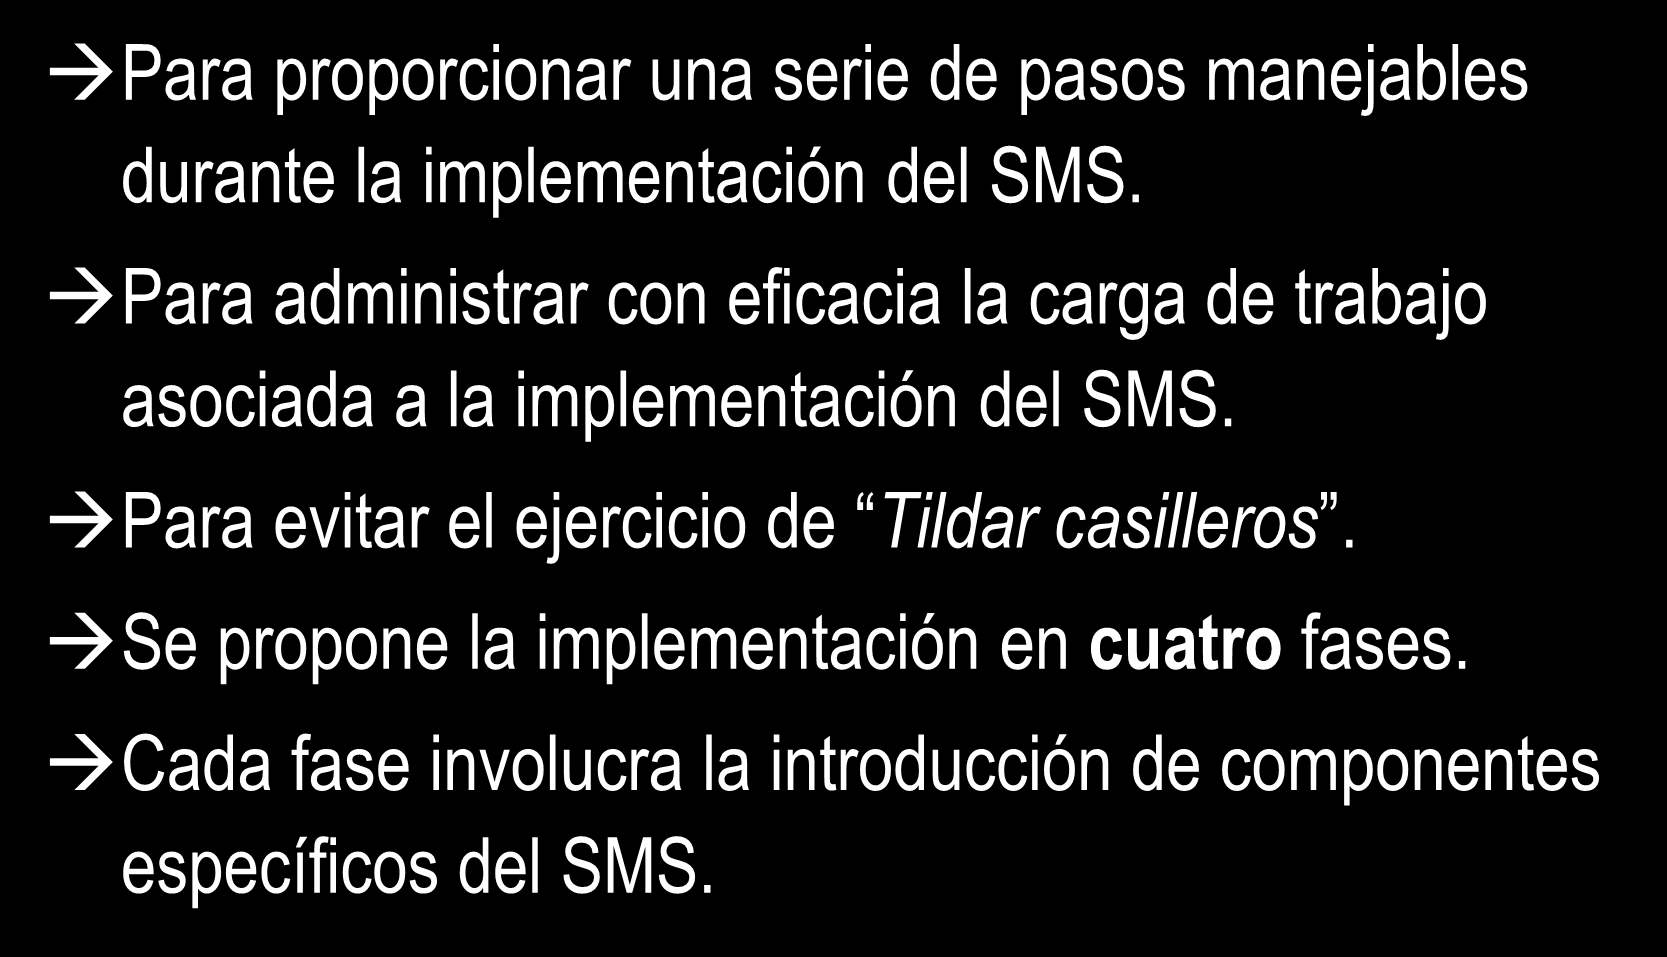 Porqué una implementación en fases? Para proporcionar una serie de pasos manejables durante la implementación del SMS.